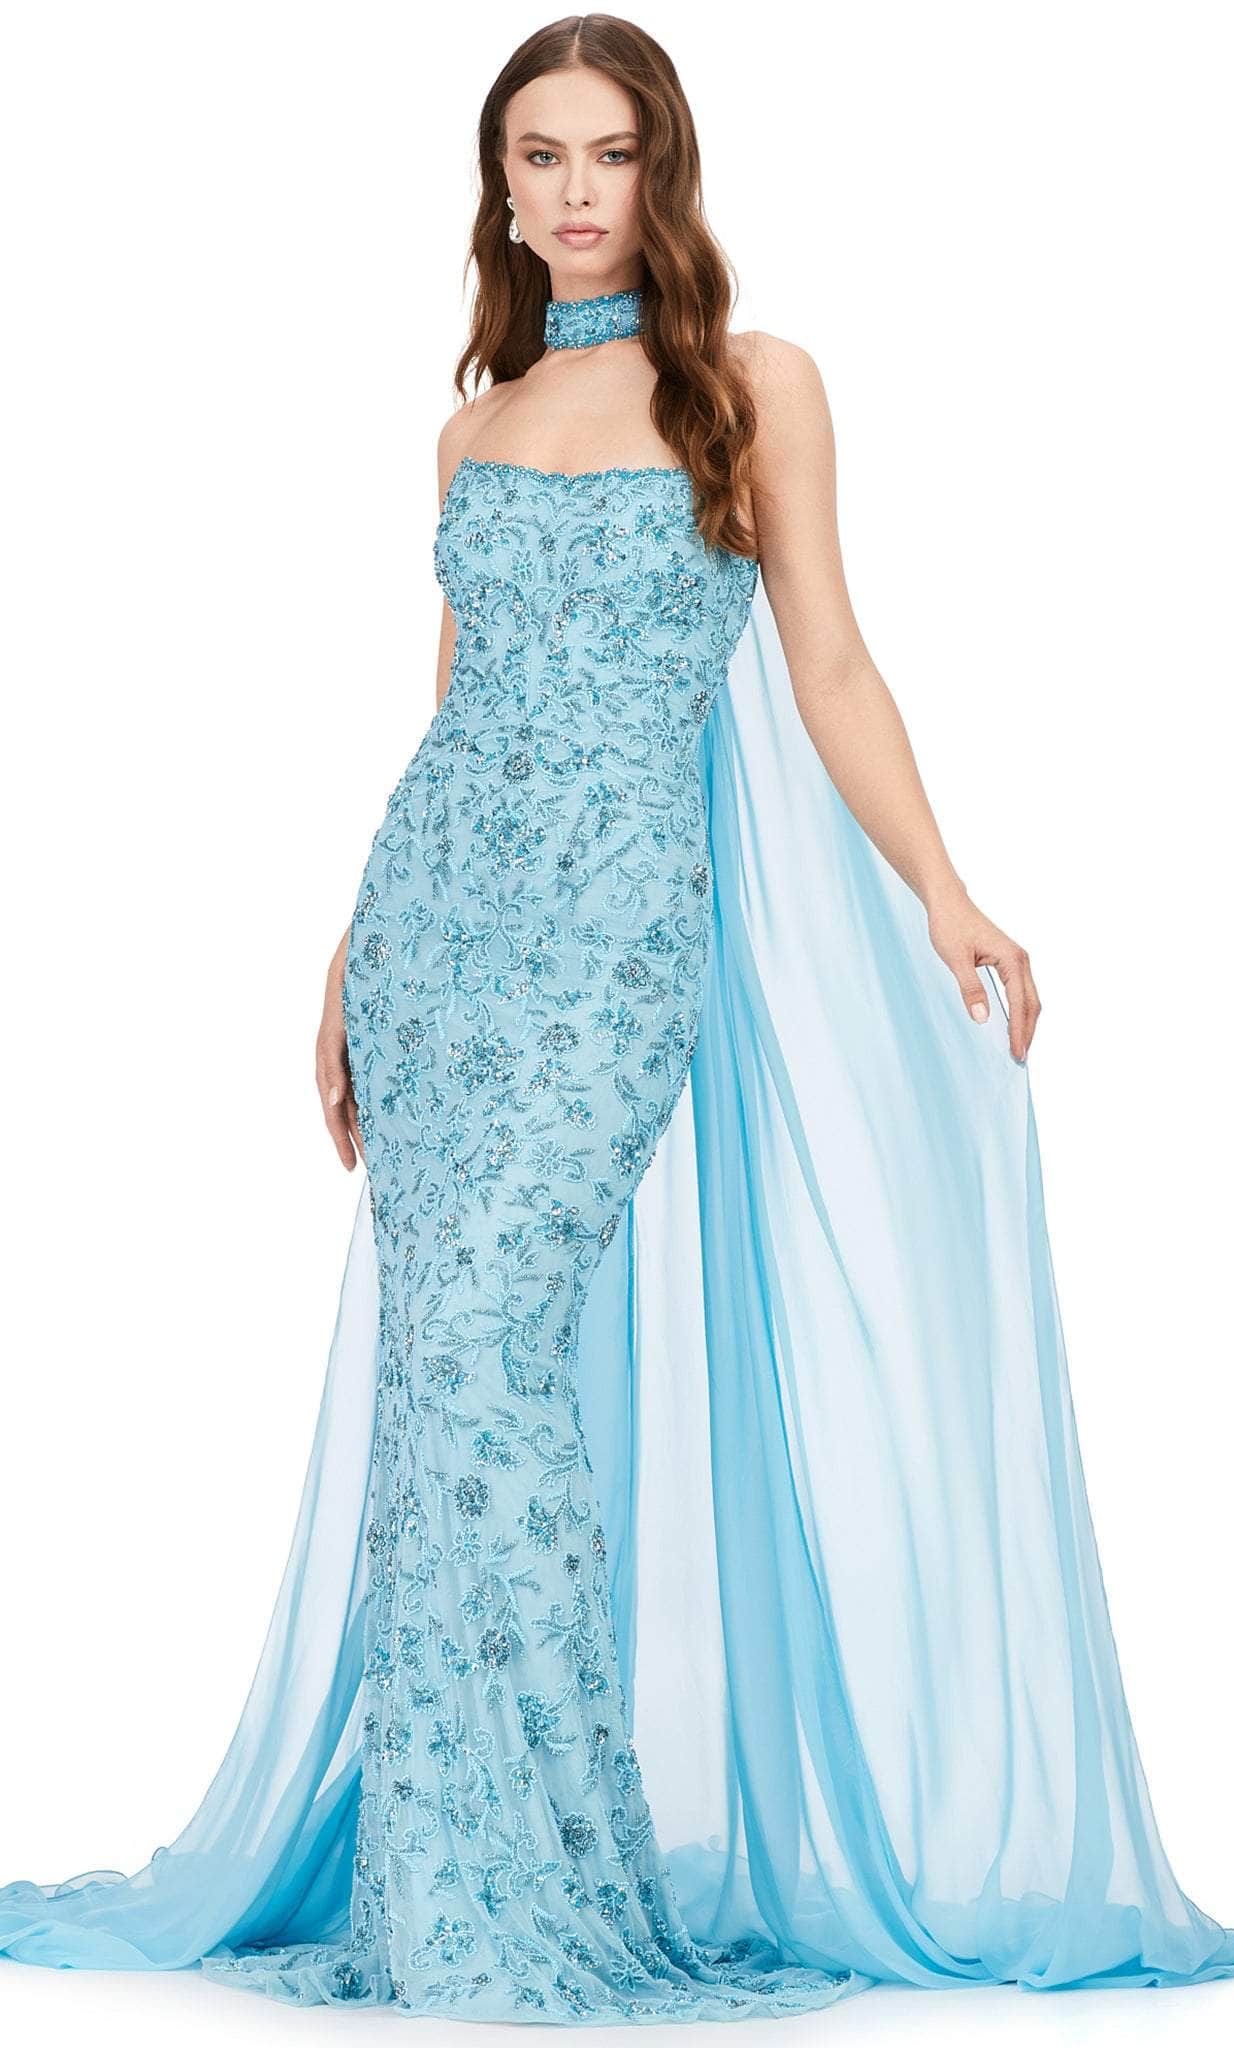 Ashley Lauren 11404 - Chiffon Strapless Evening Dress Evening Dresses